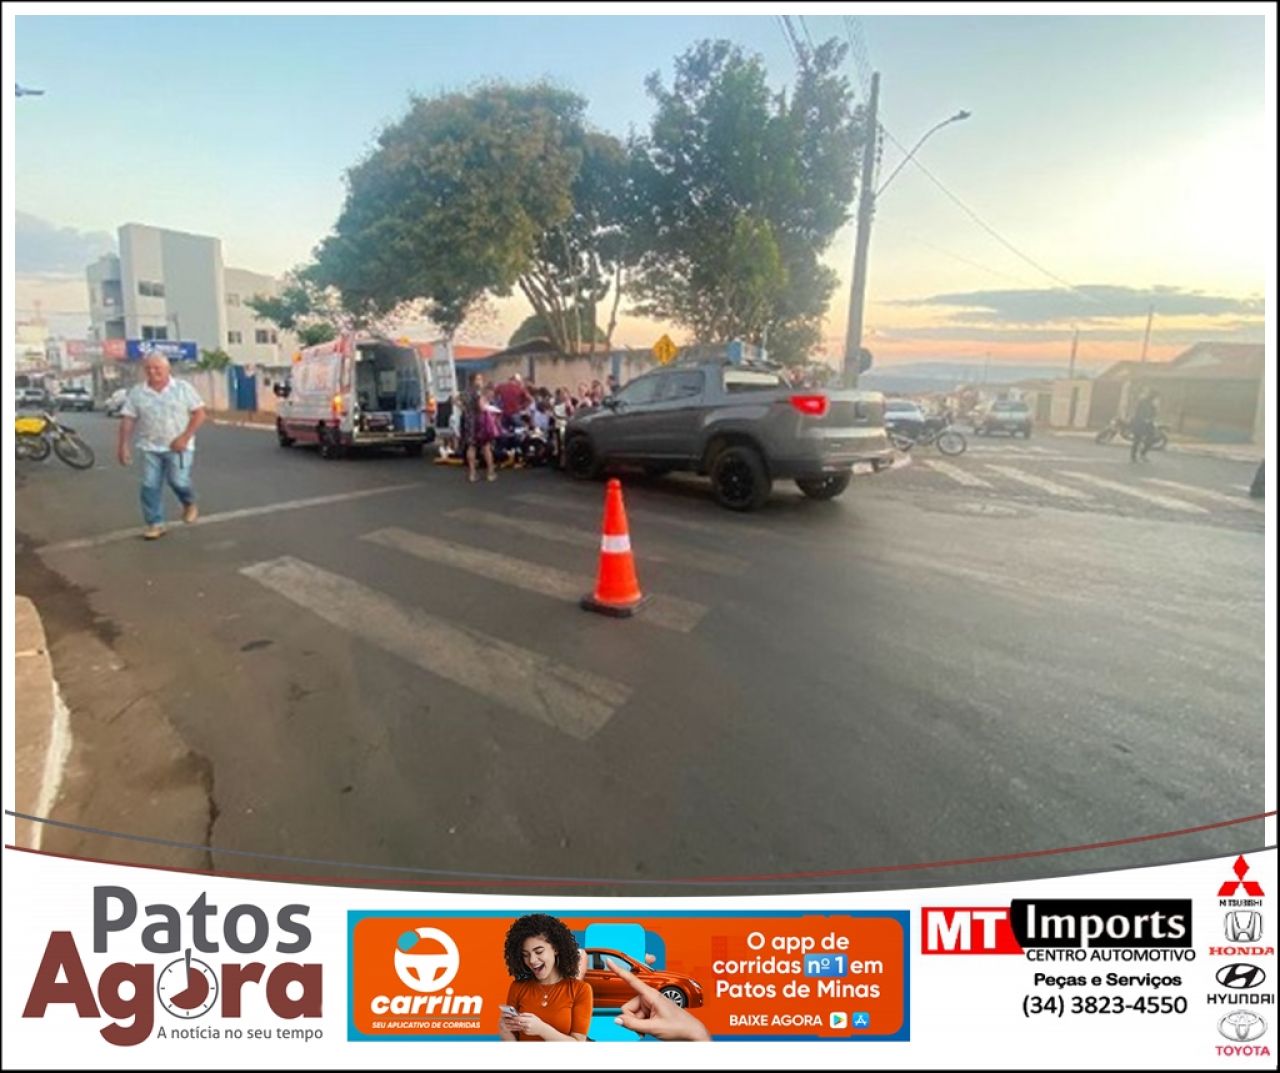 Adolescente de 13 anos é atropelada na faixa de pedestre em Patos de Minas